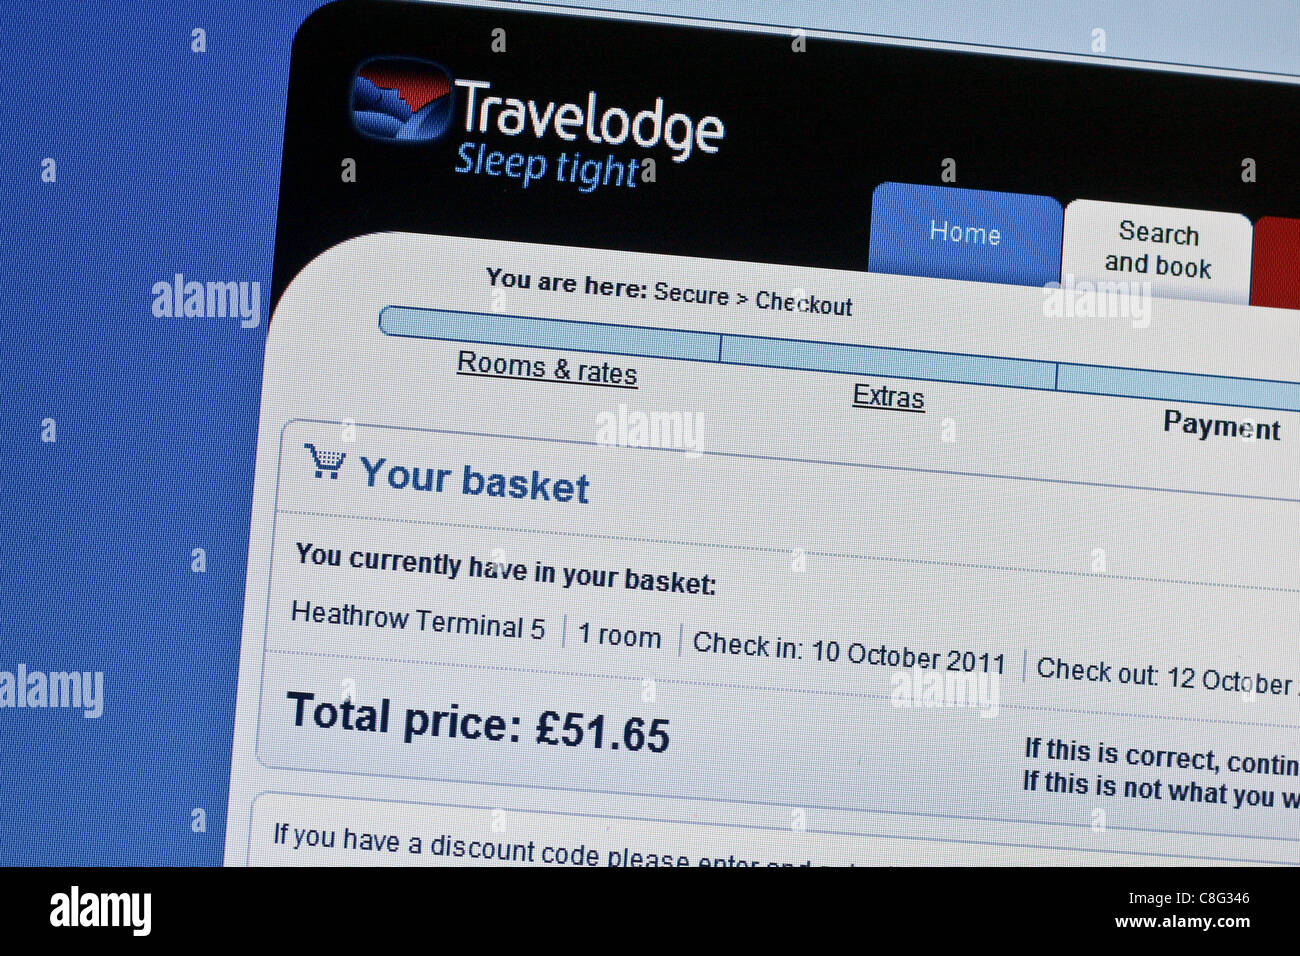 Online prenotazione Travelodge conferma, che mostra le tariffe economiche per due notti, 2011. Tariffe meno costose sono non-refundabl. Foto Stock